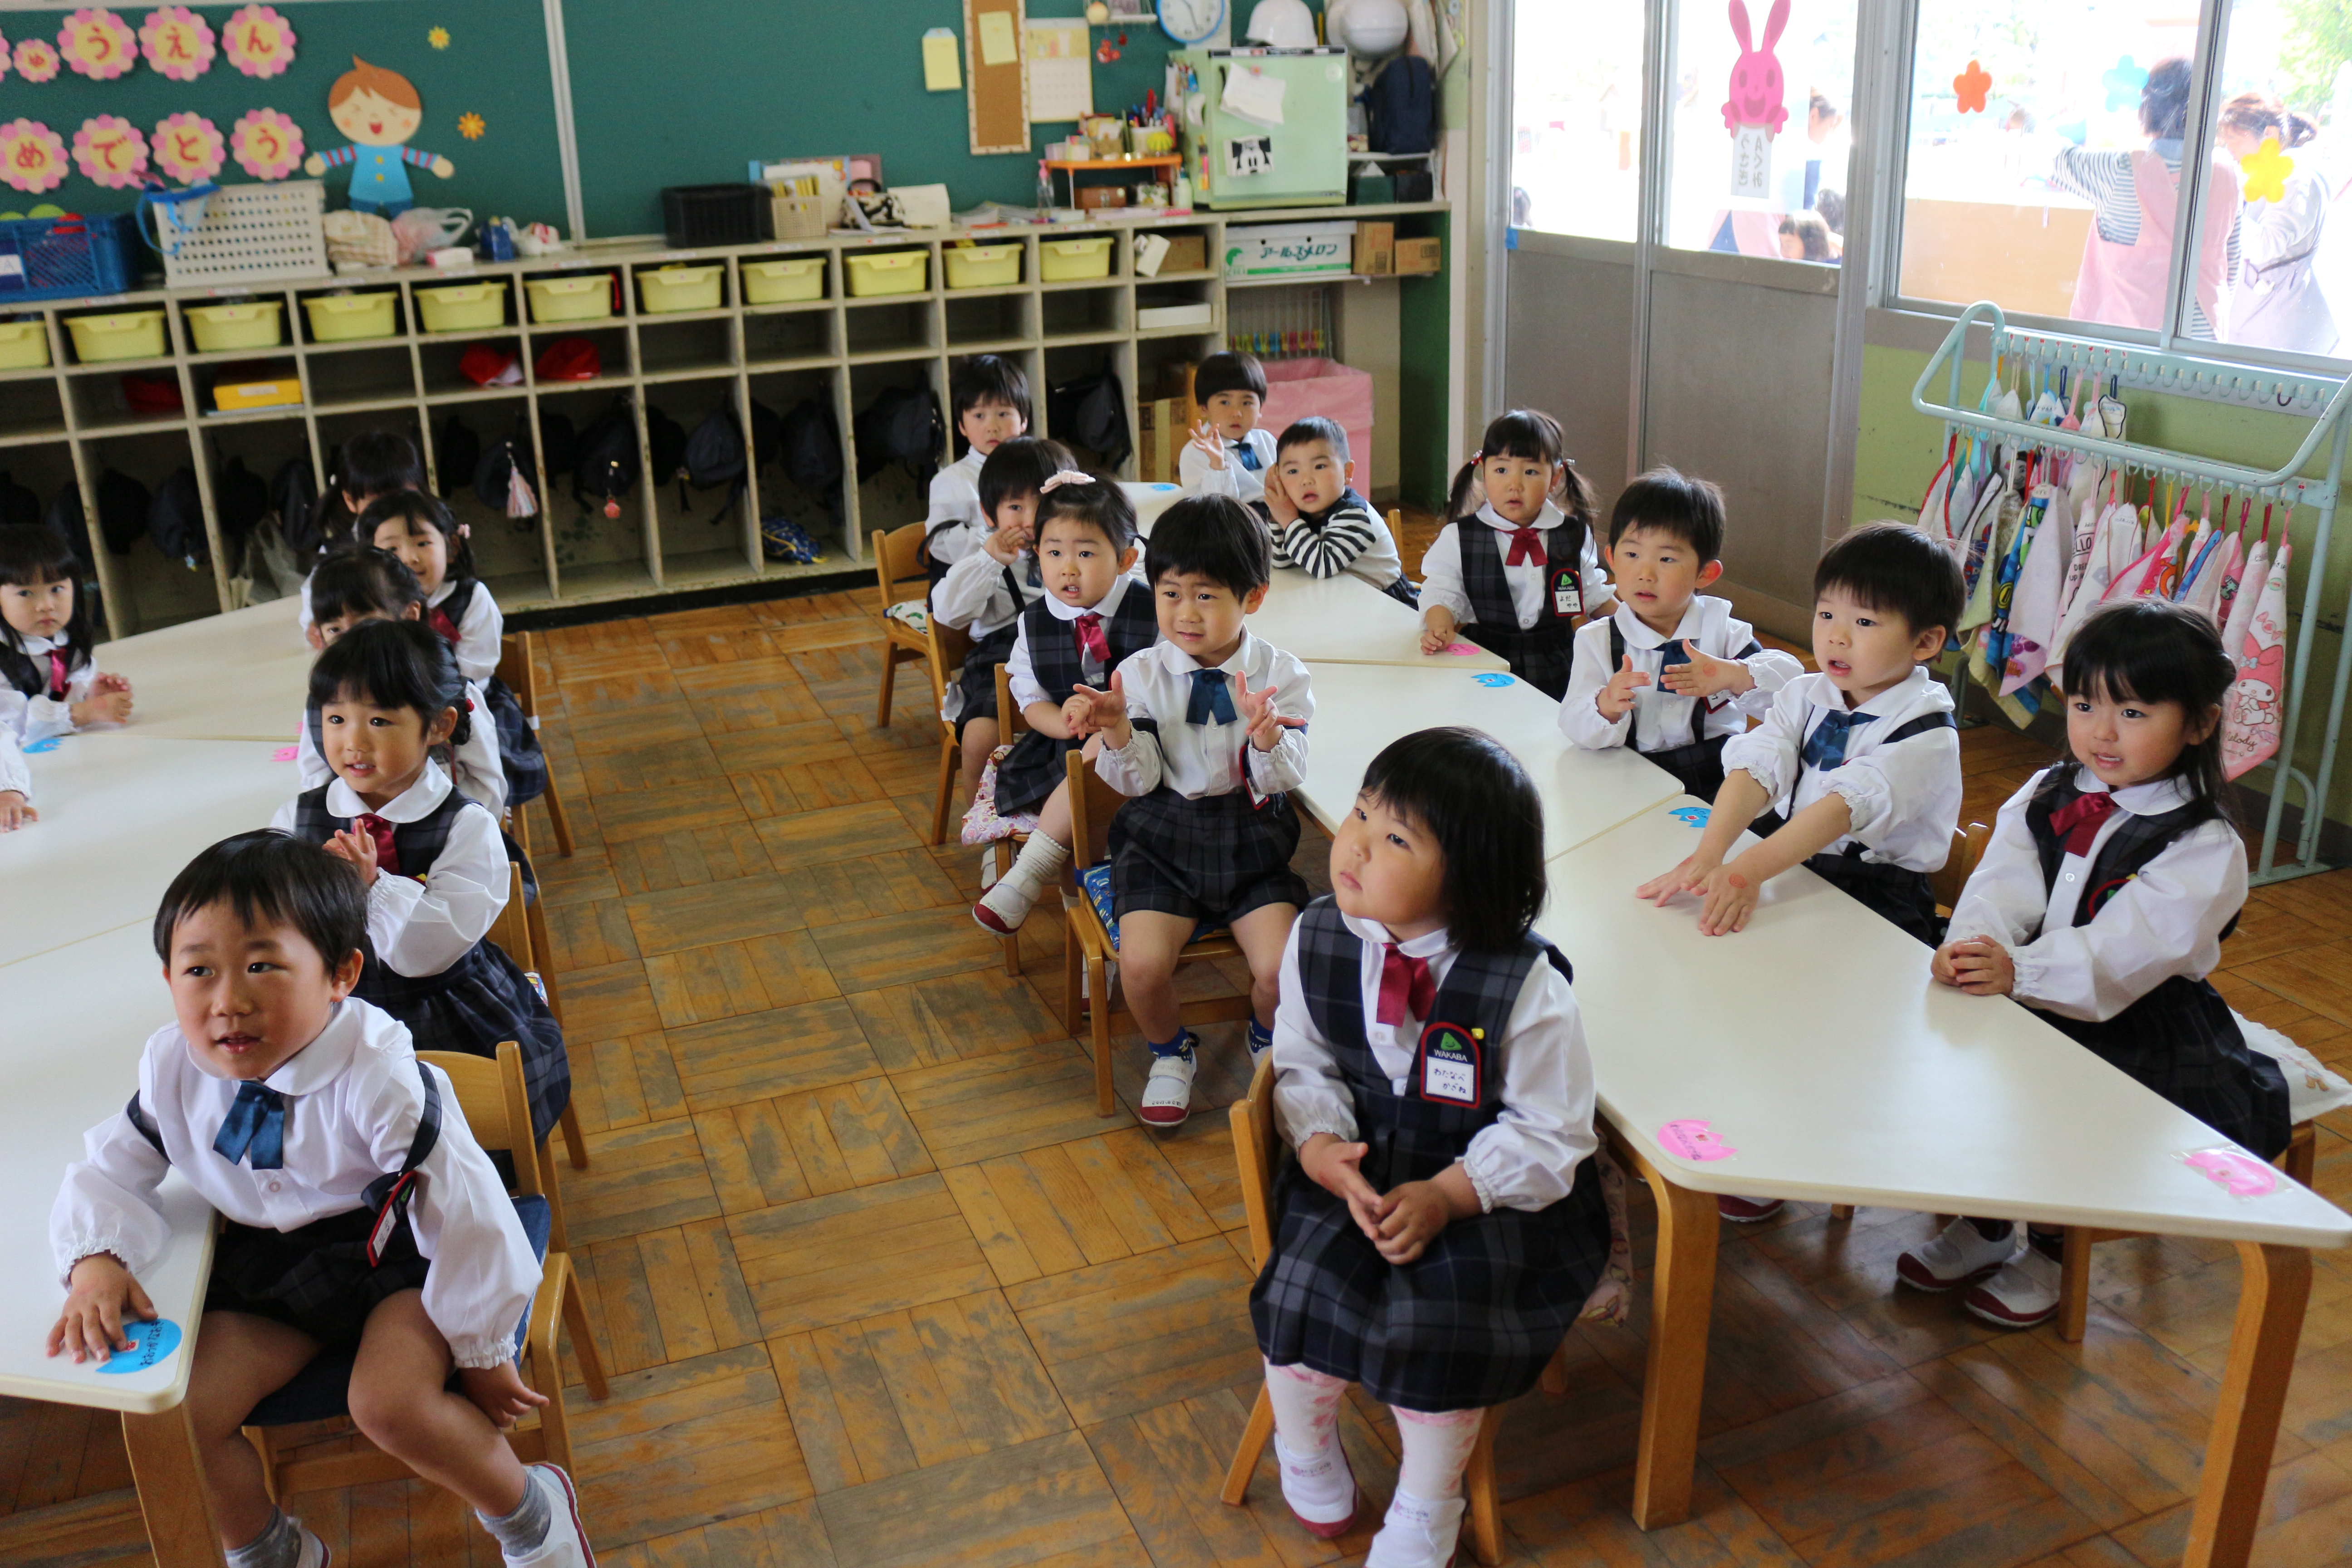 幼稚園 わかば 深セン若葉教育センター・若葉こども学園・日本人幼稚園